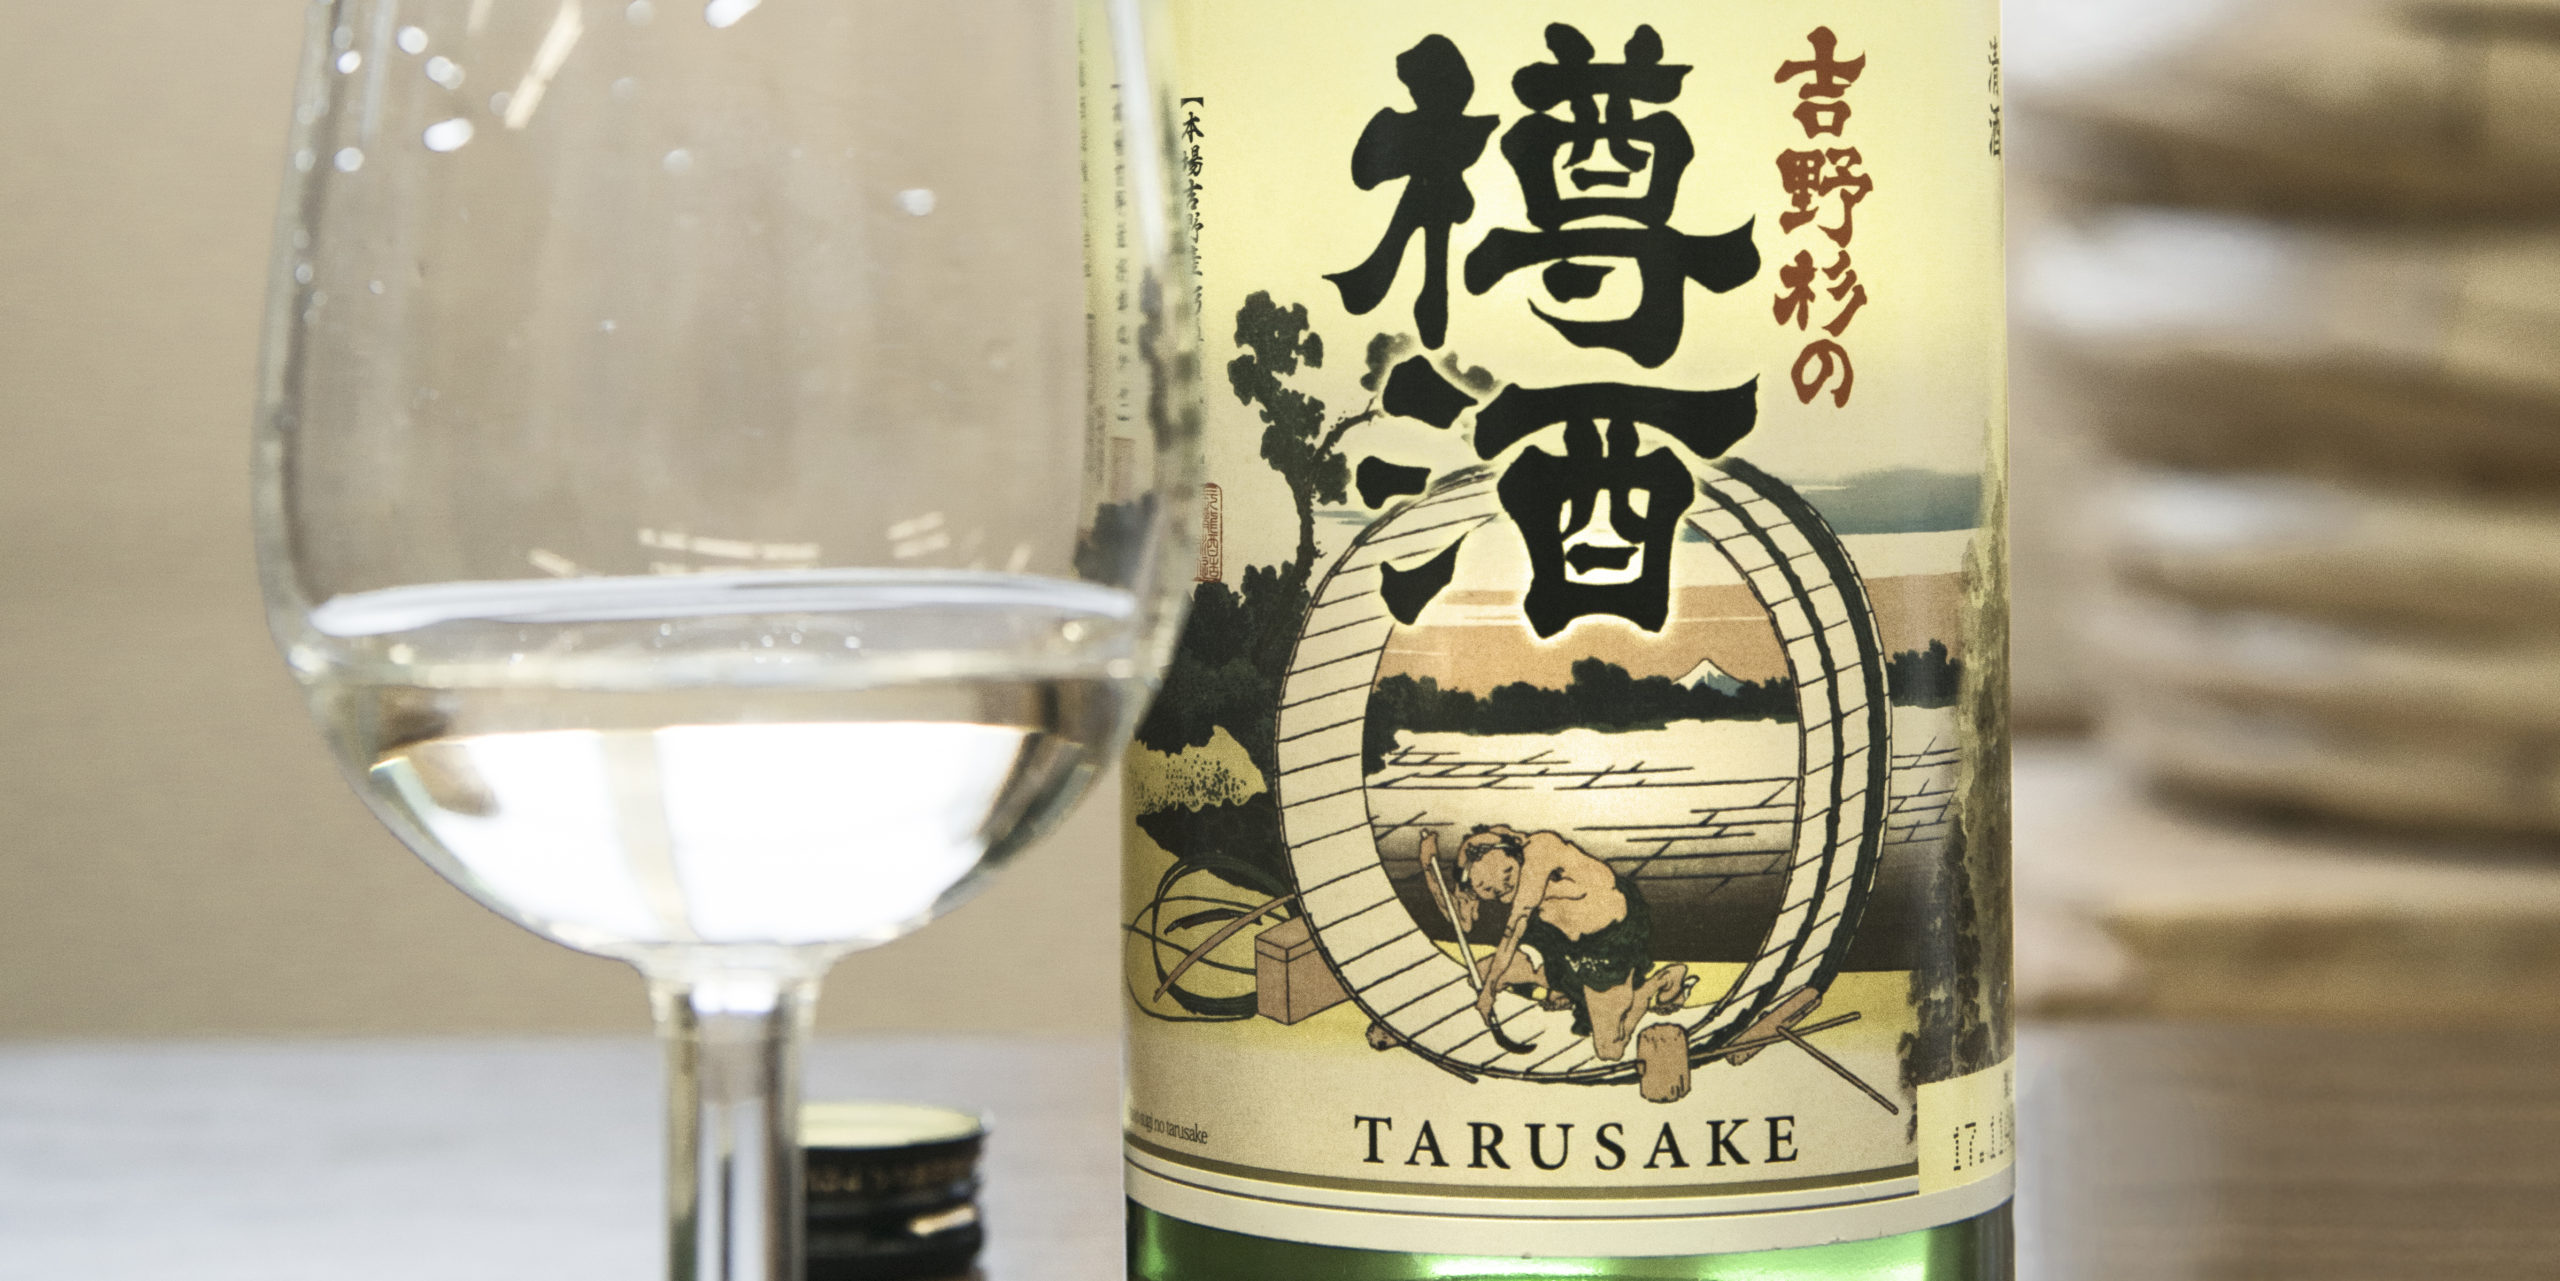 Yoshinosugi Taruzake label and glass close-up